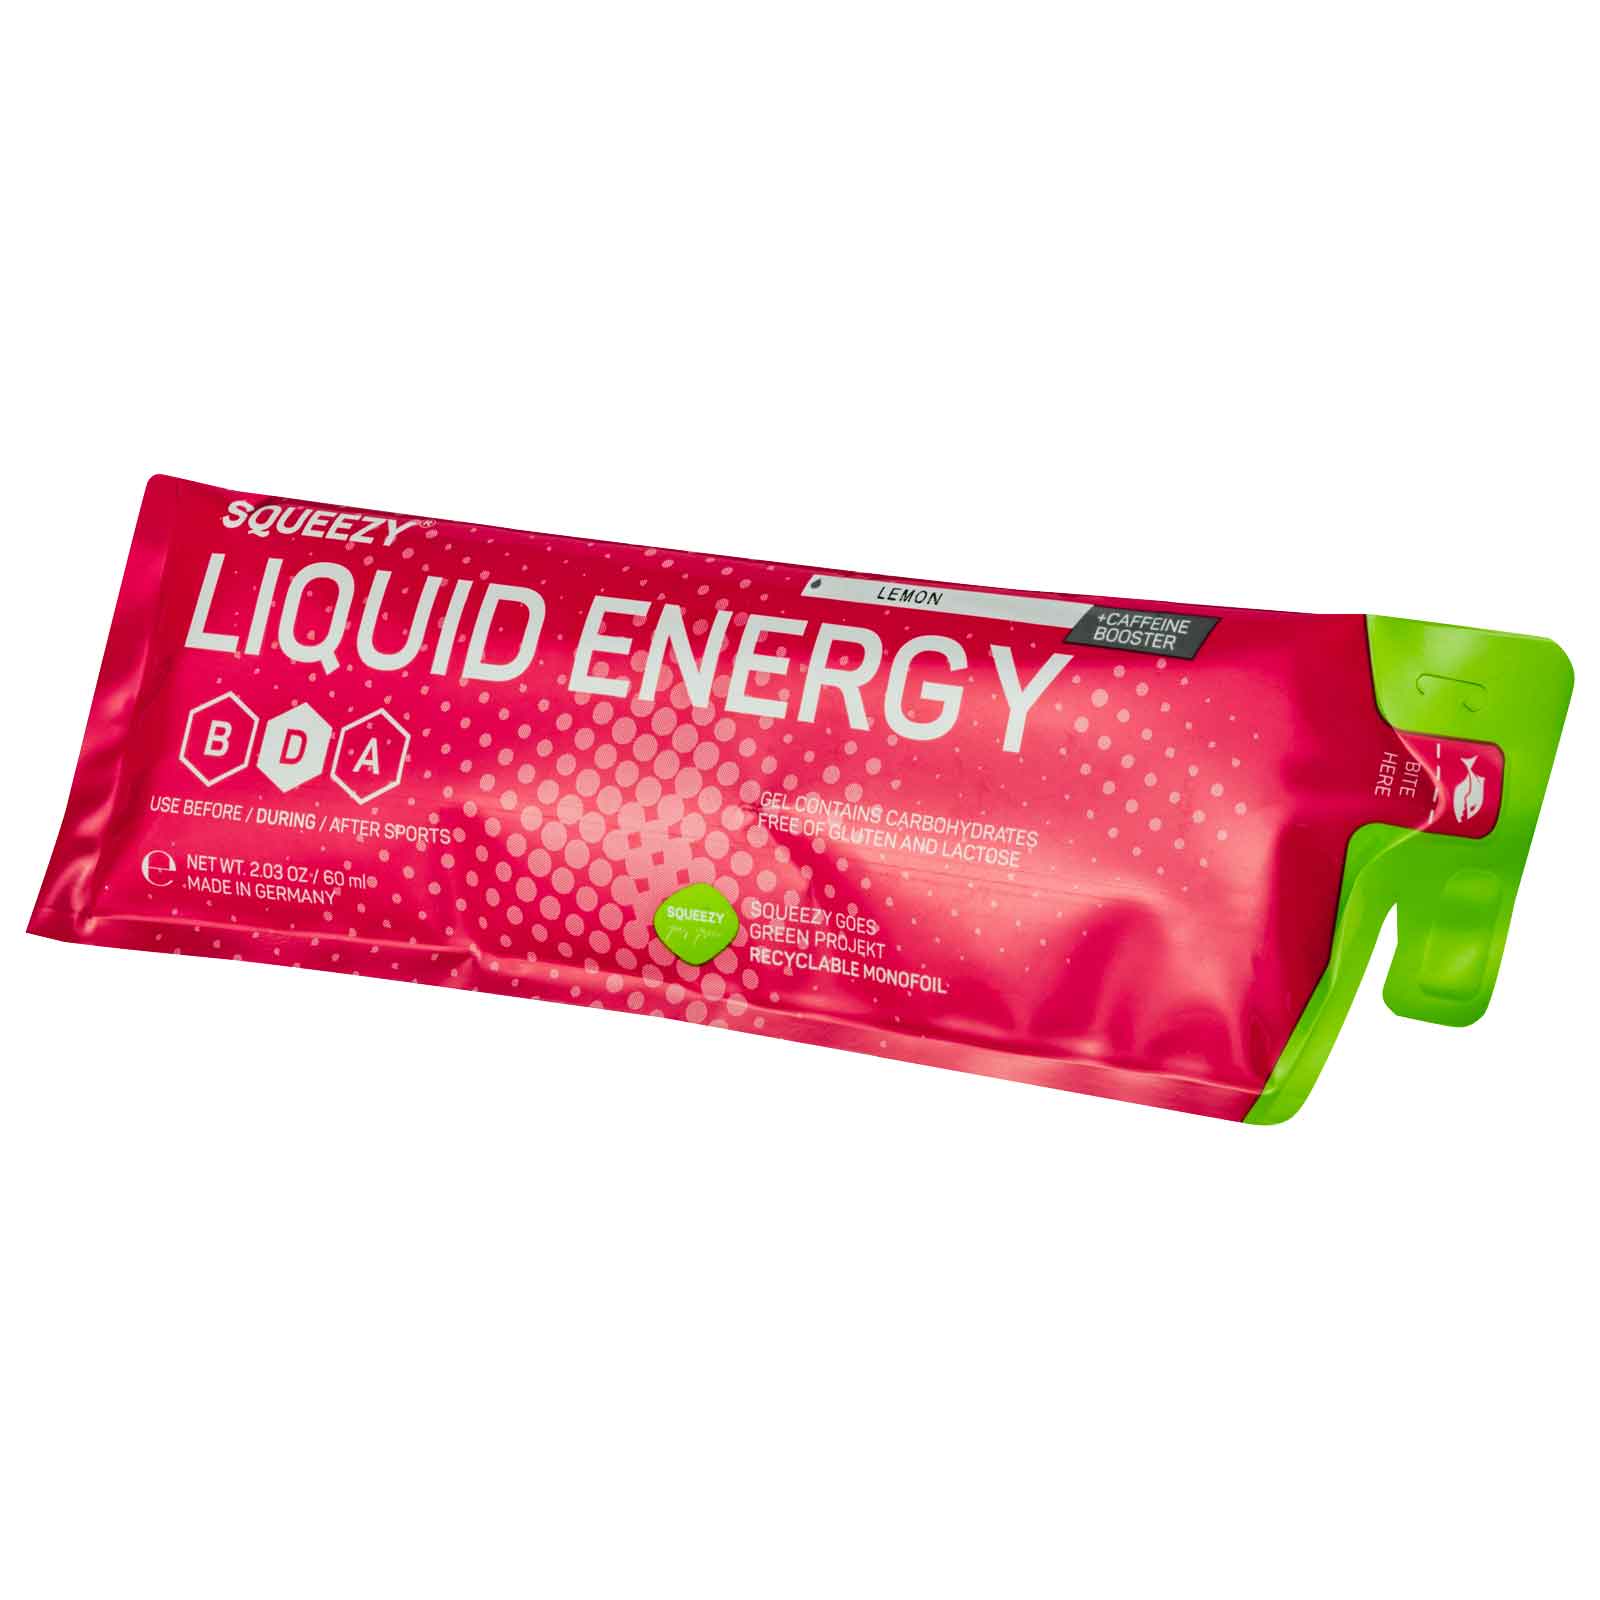 Produktbild von Squeezy Liquid Energy - Kohlenhydrat-Gel + Koffein - 60ml